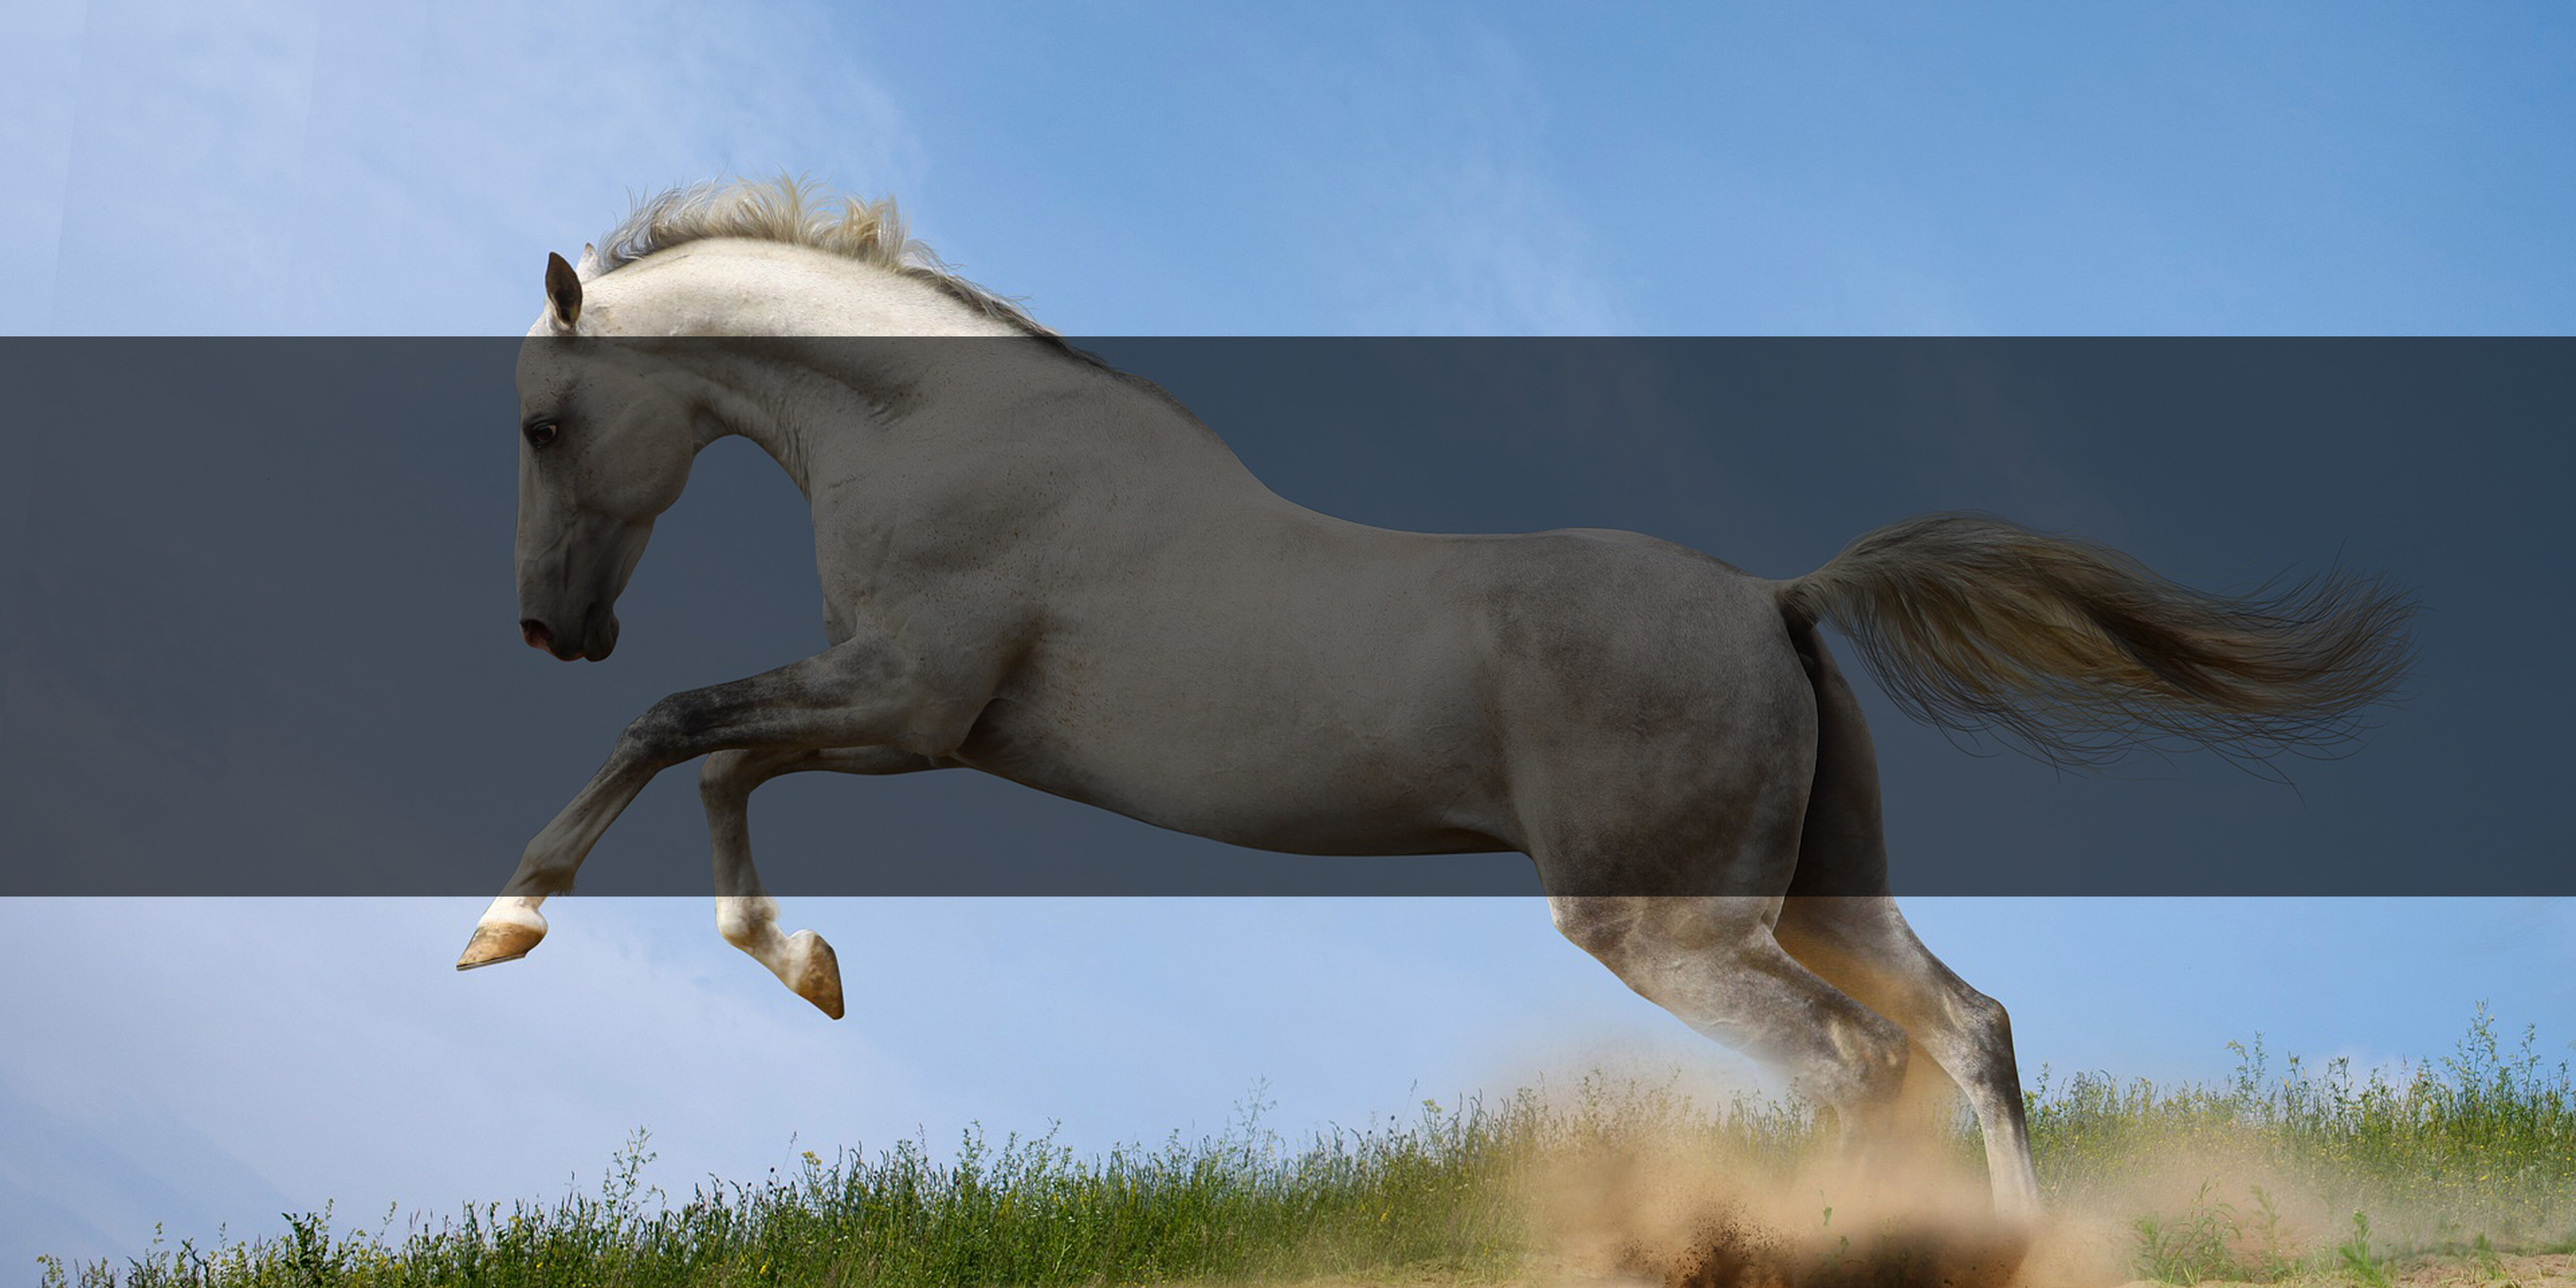 Pferdeschampoo für Ihr Pferd online kaufen - Hogsta Ridsport